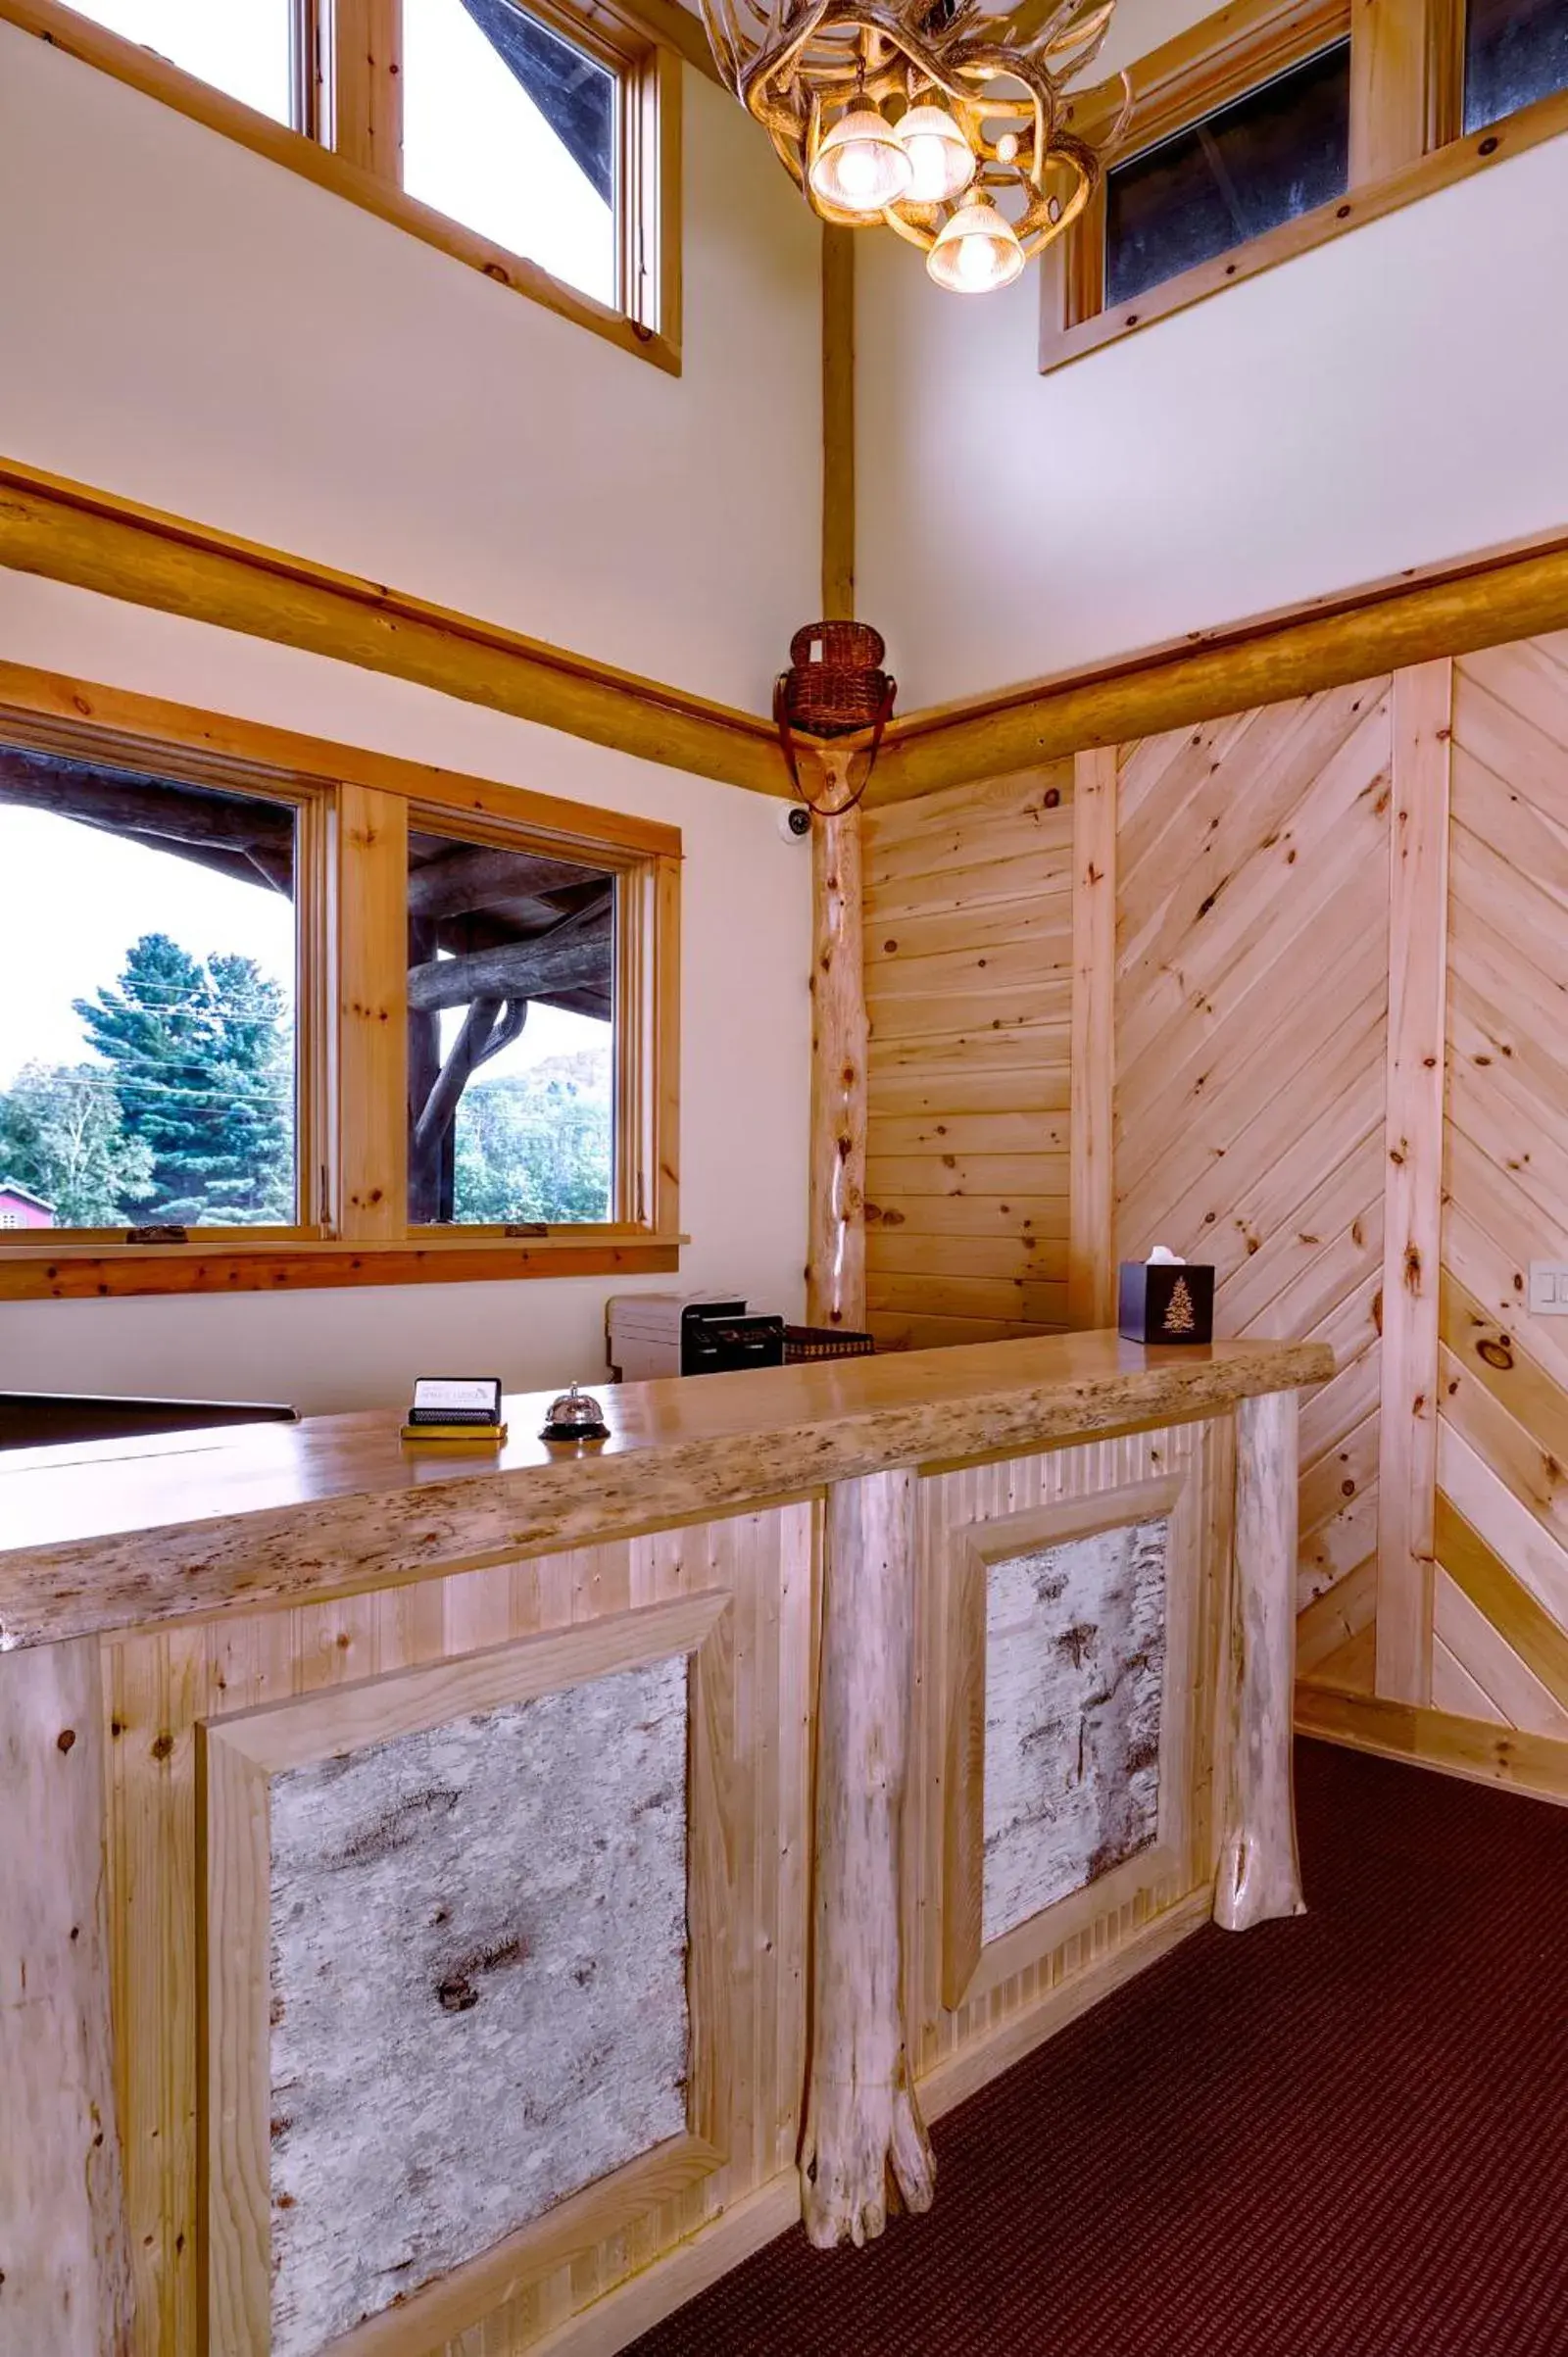 Lobby or reception, Bathroom in Adirondack Spruce Lodge